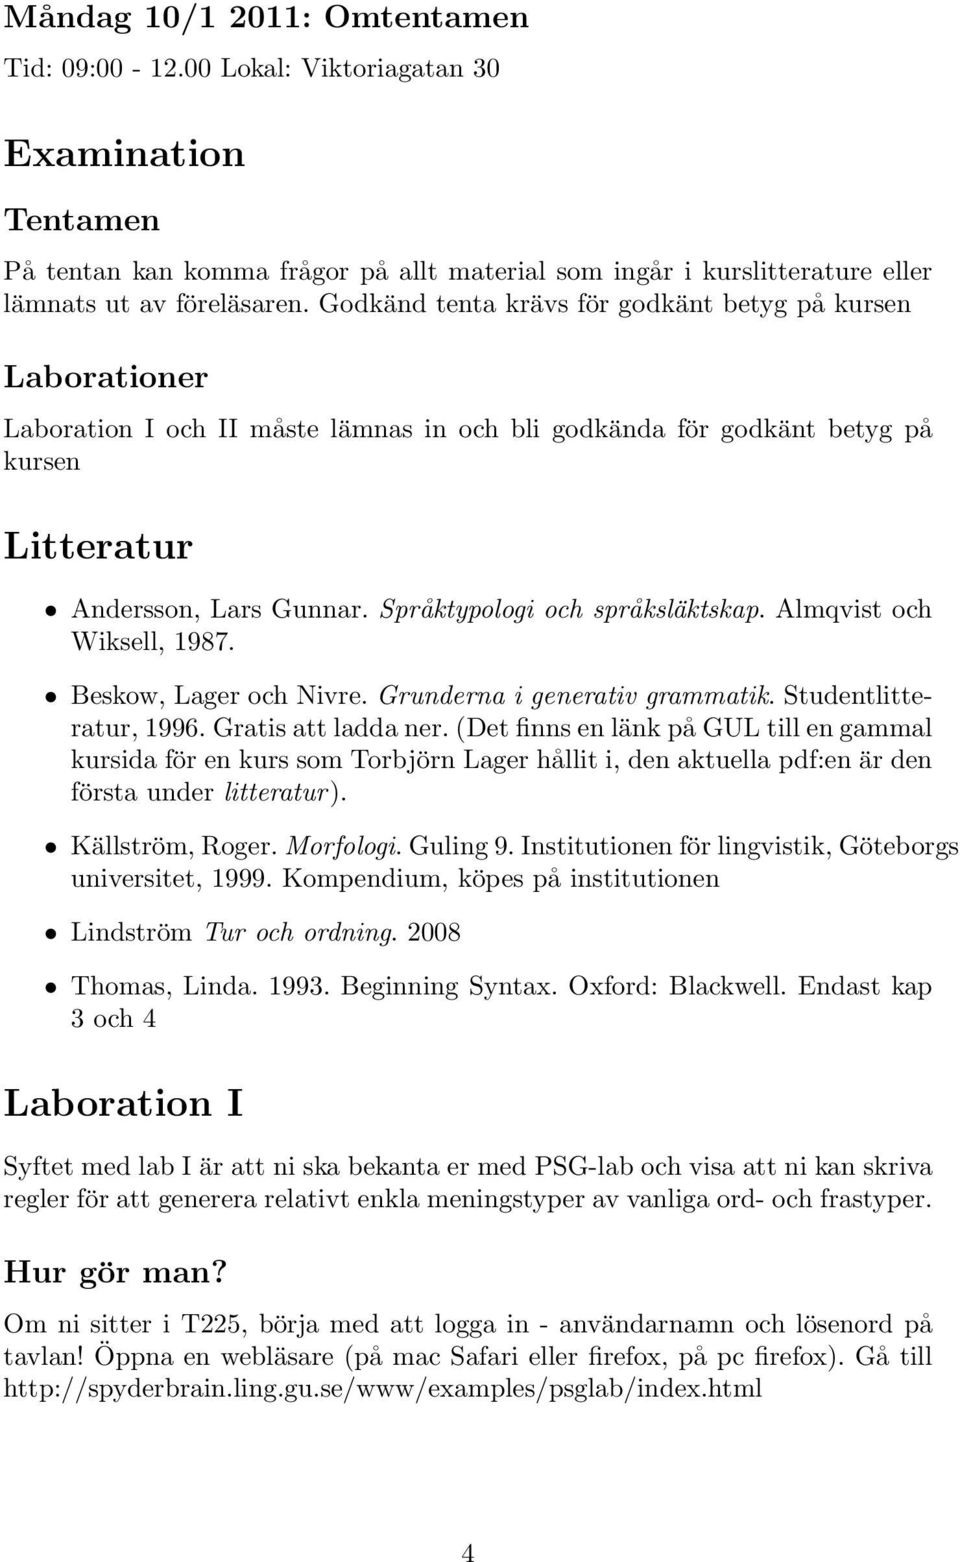 Språktypologi och språksläktskap. Almqvist och Wiksell, 1987. Beskow, Lager och Nivre. Grunderna i generativ grammatik. Studentlitteratur, 1996. Gratis att ladda ner.